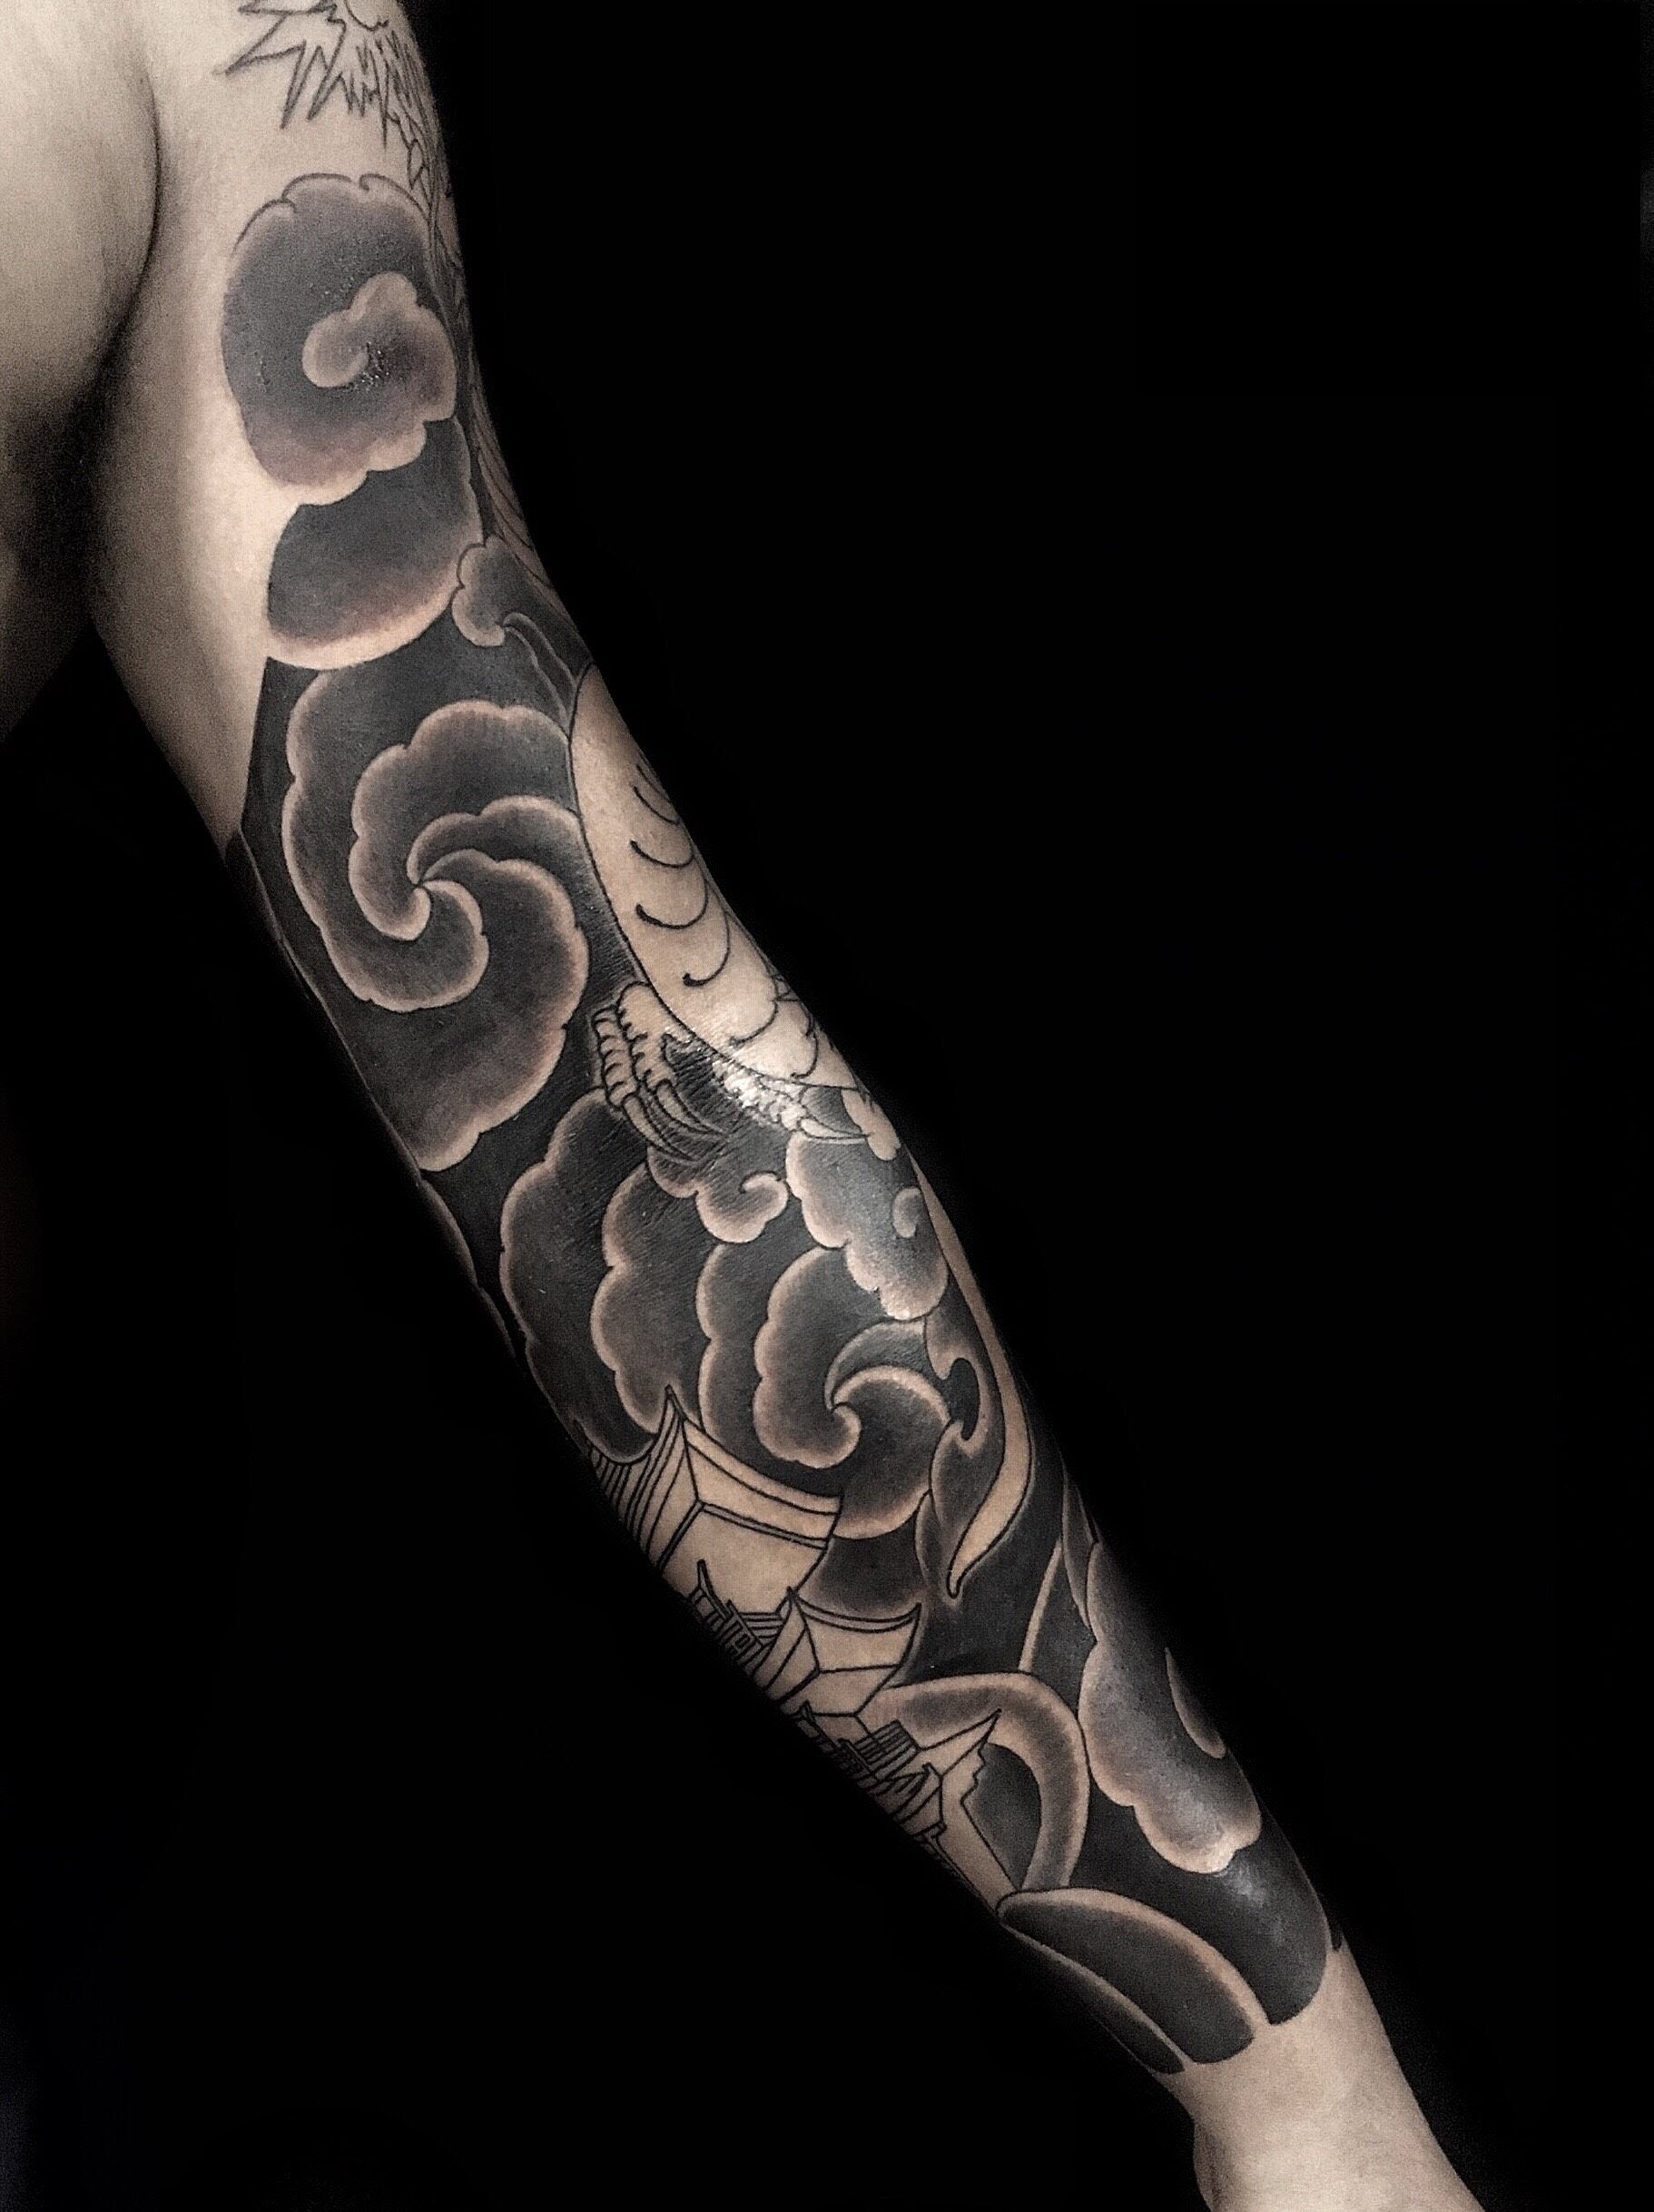 Mẫu Full tay châu Âu - Thế Giới Tattoo - Xăm Hình Nghệ Thuật | Facebook